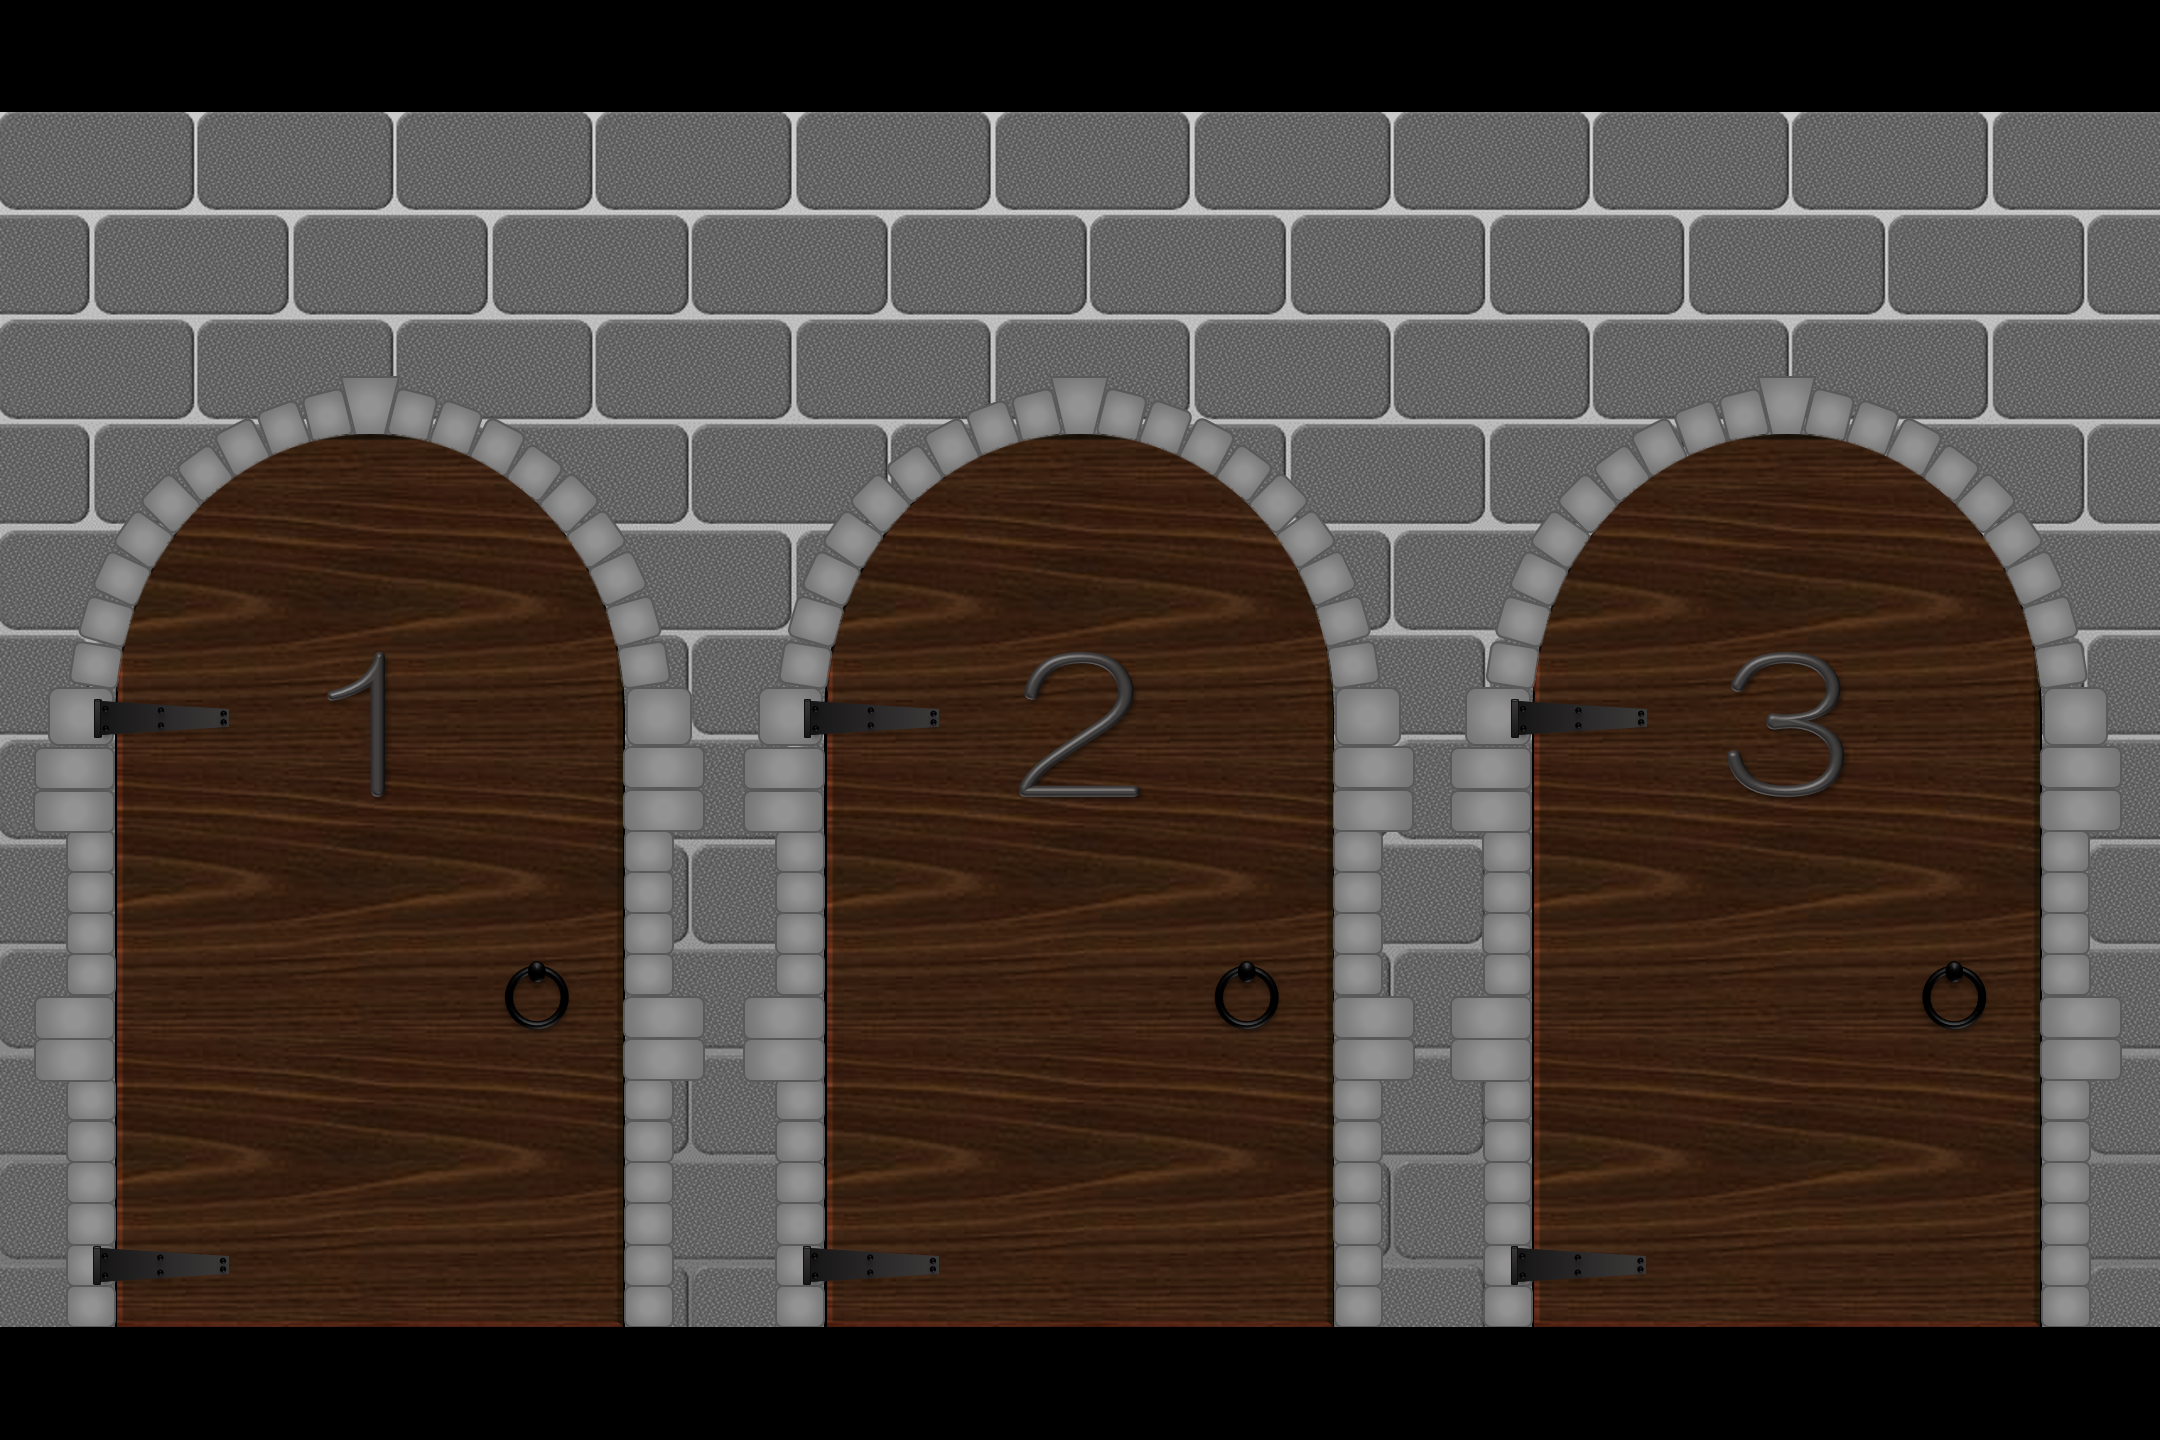 Loadstring game doors. Игра двери. Doors двери игра. Пиксельная дверь. Дверь для игры 2д.